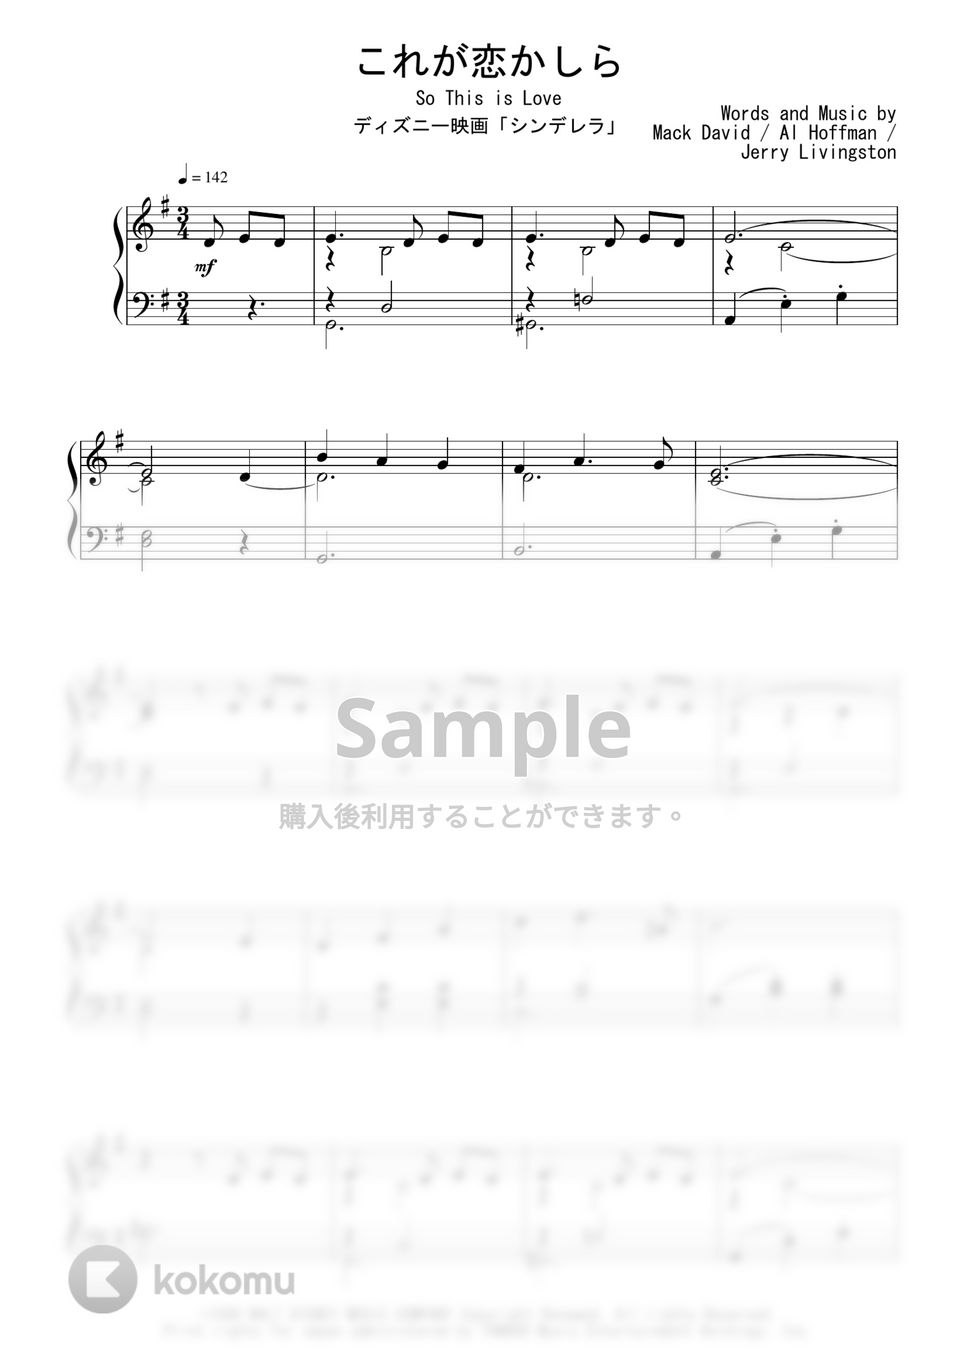 ディズニー映画『シンデレラ』OST - これが恋かしら by Peony